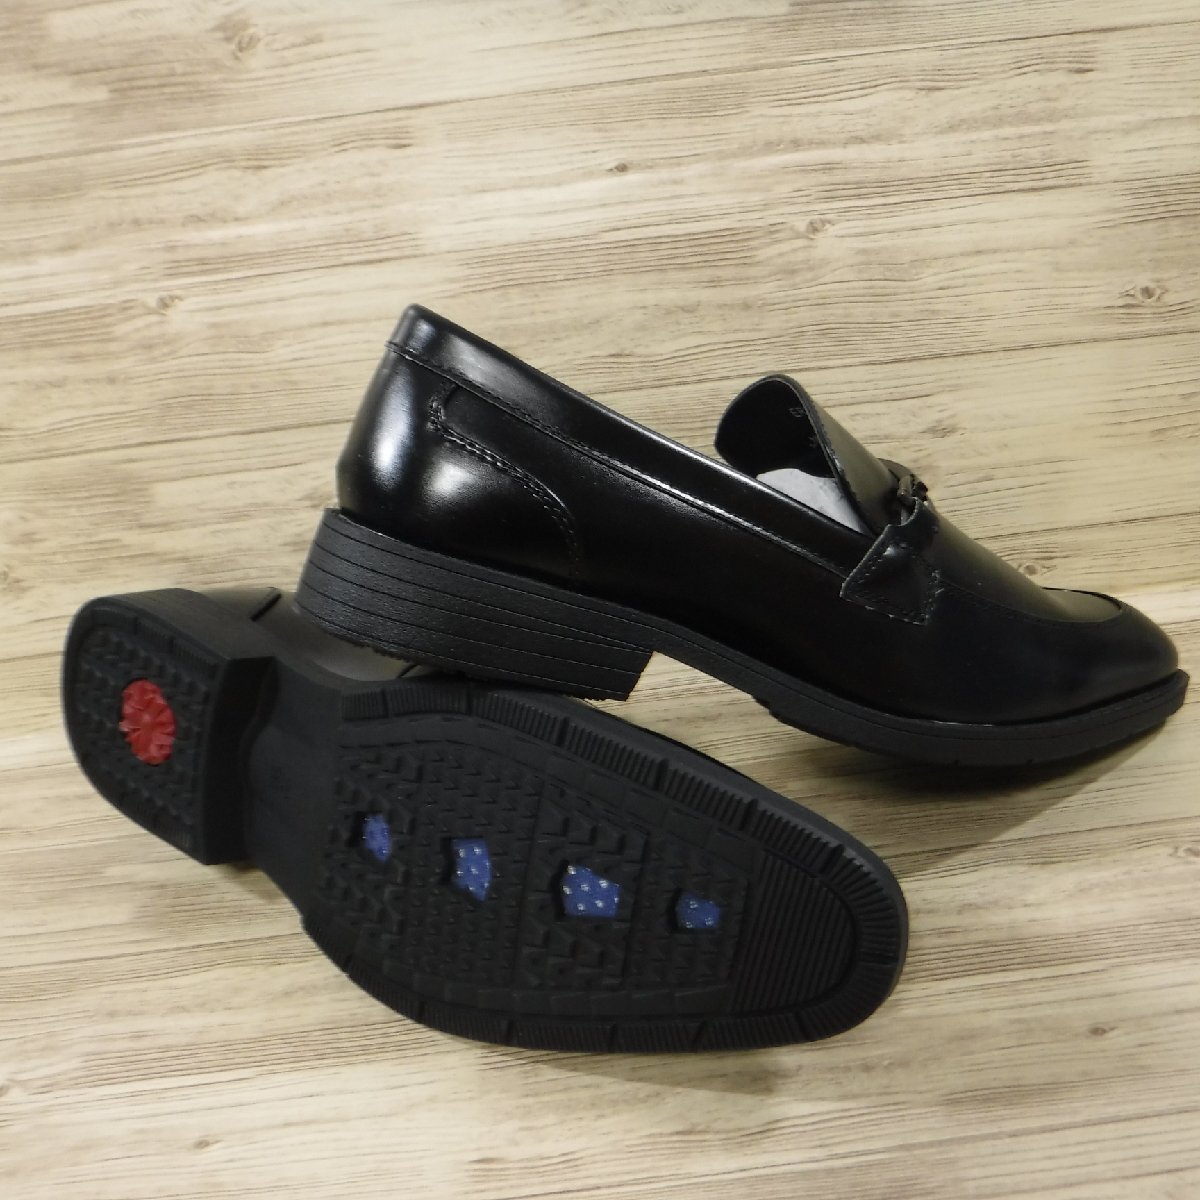 KK579ma гонг smadras el greco новый товар чёрный легкий bit Loafer туфли без застежки антибактериальный дезодорация бизнес обувь 27.0 3E. скользить подошва 